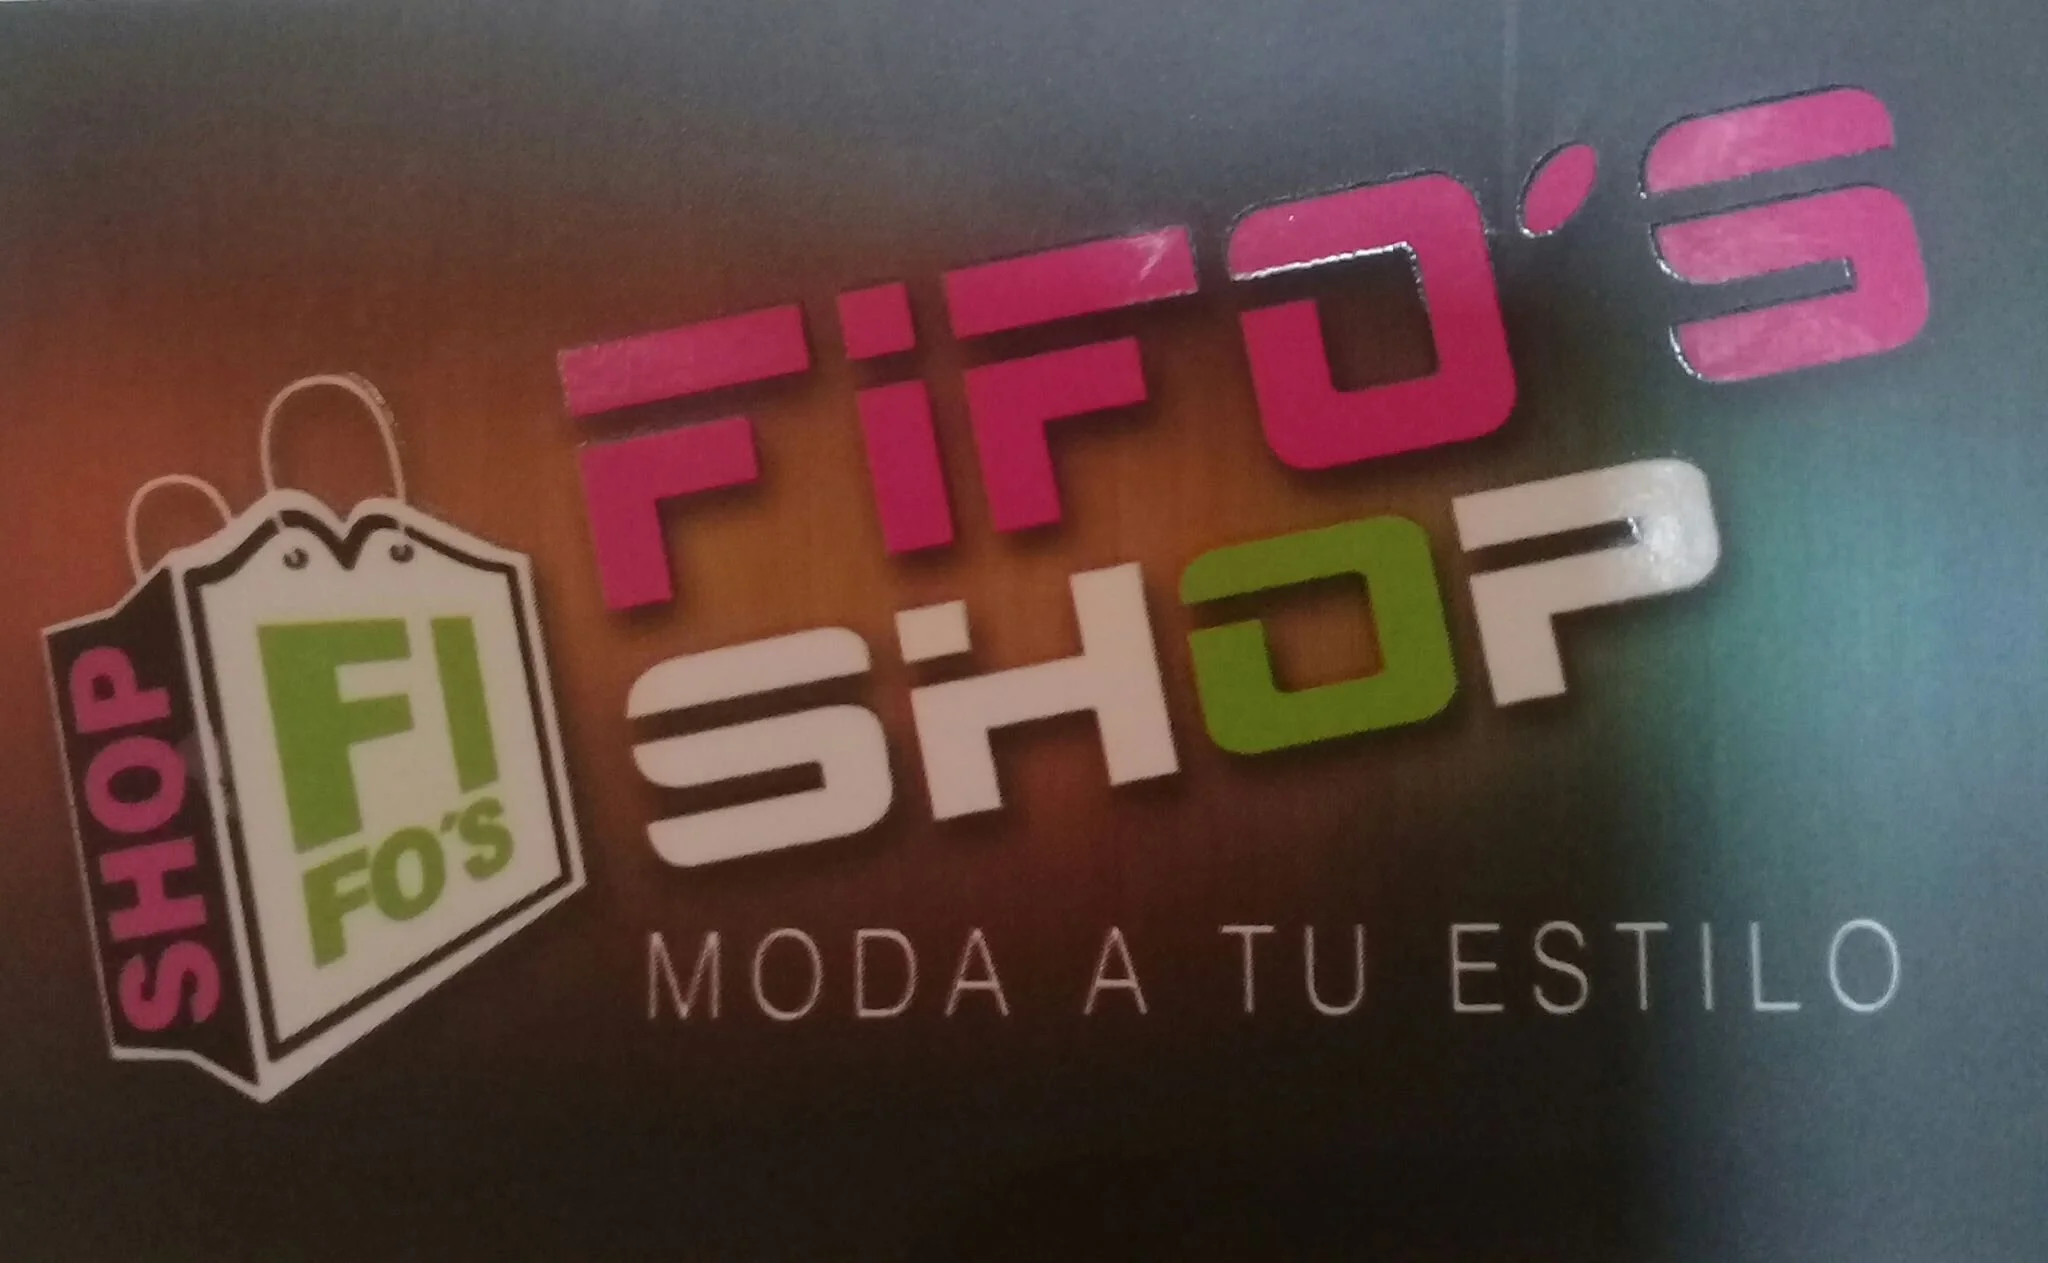 FIFOS SHOP tienda de ropa-5059